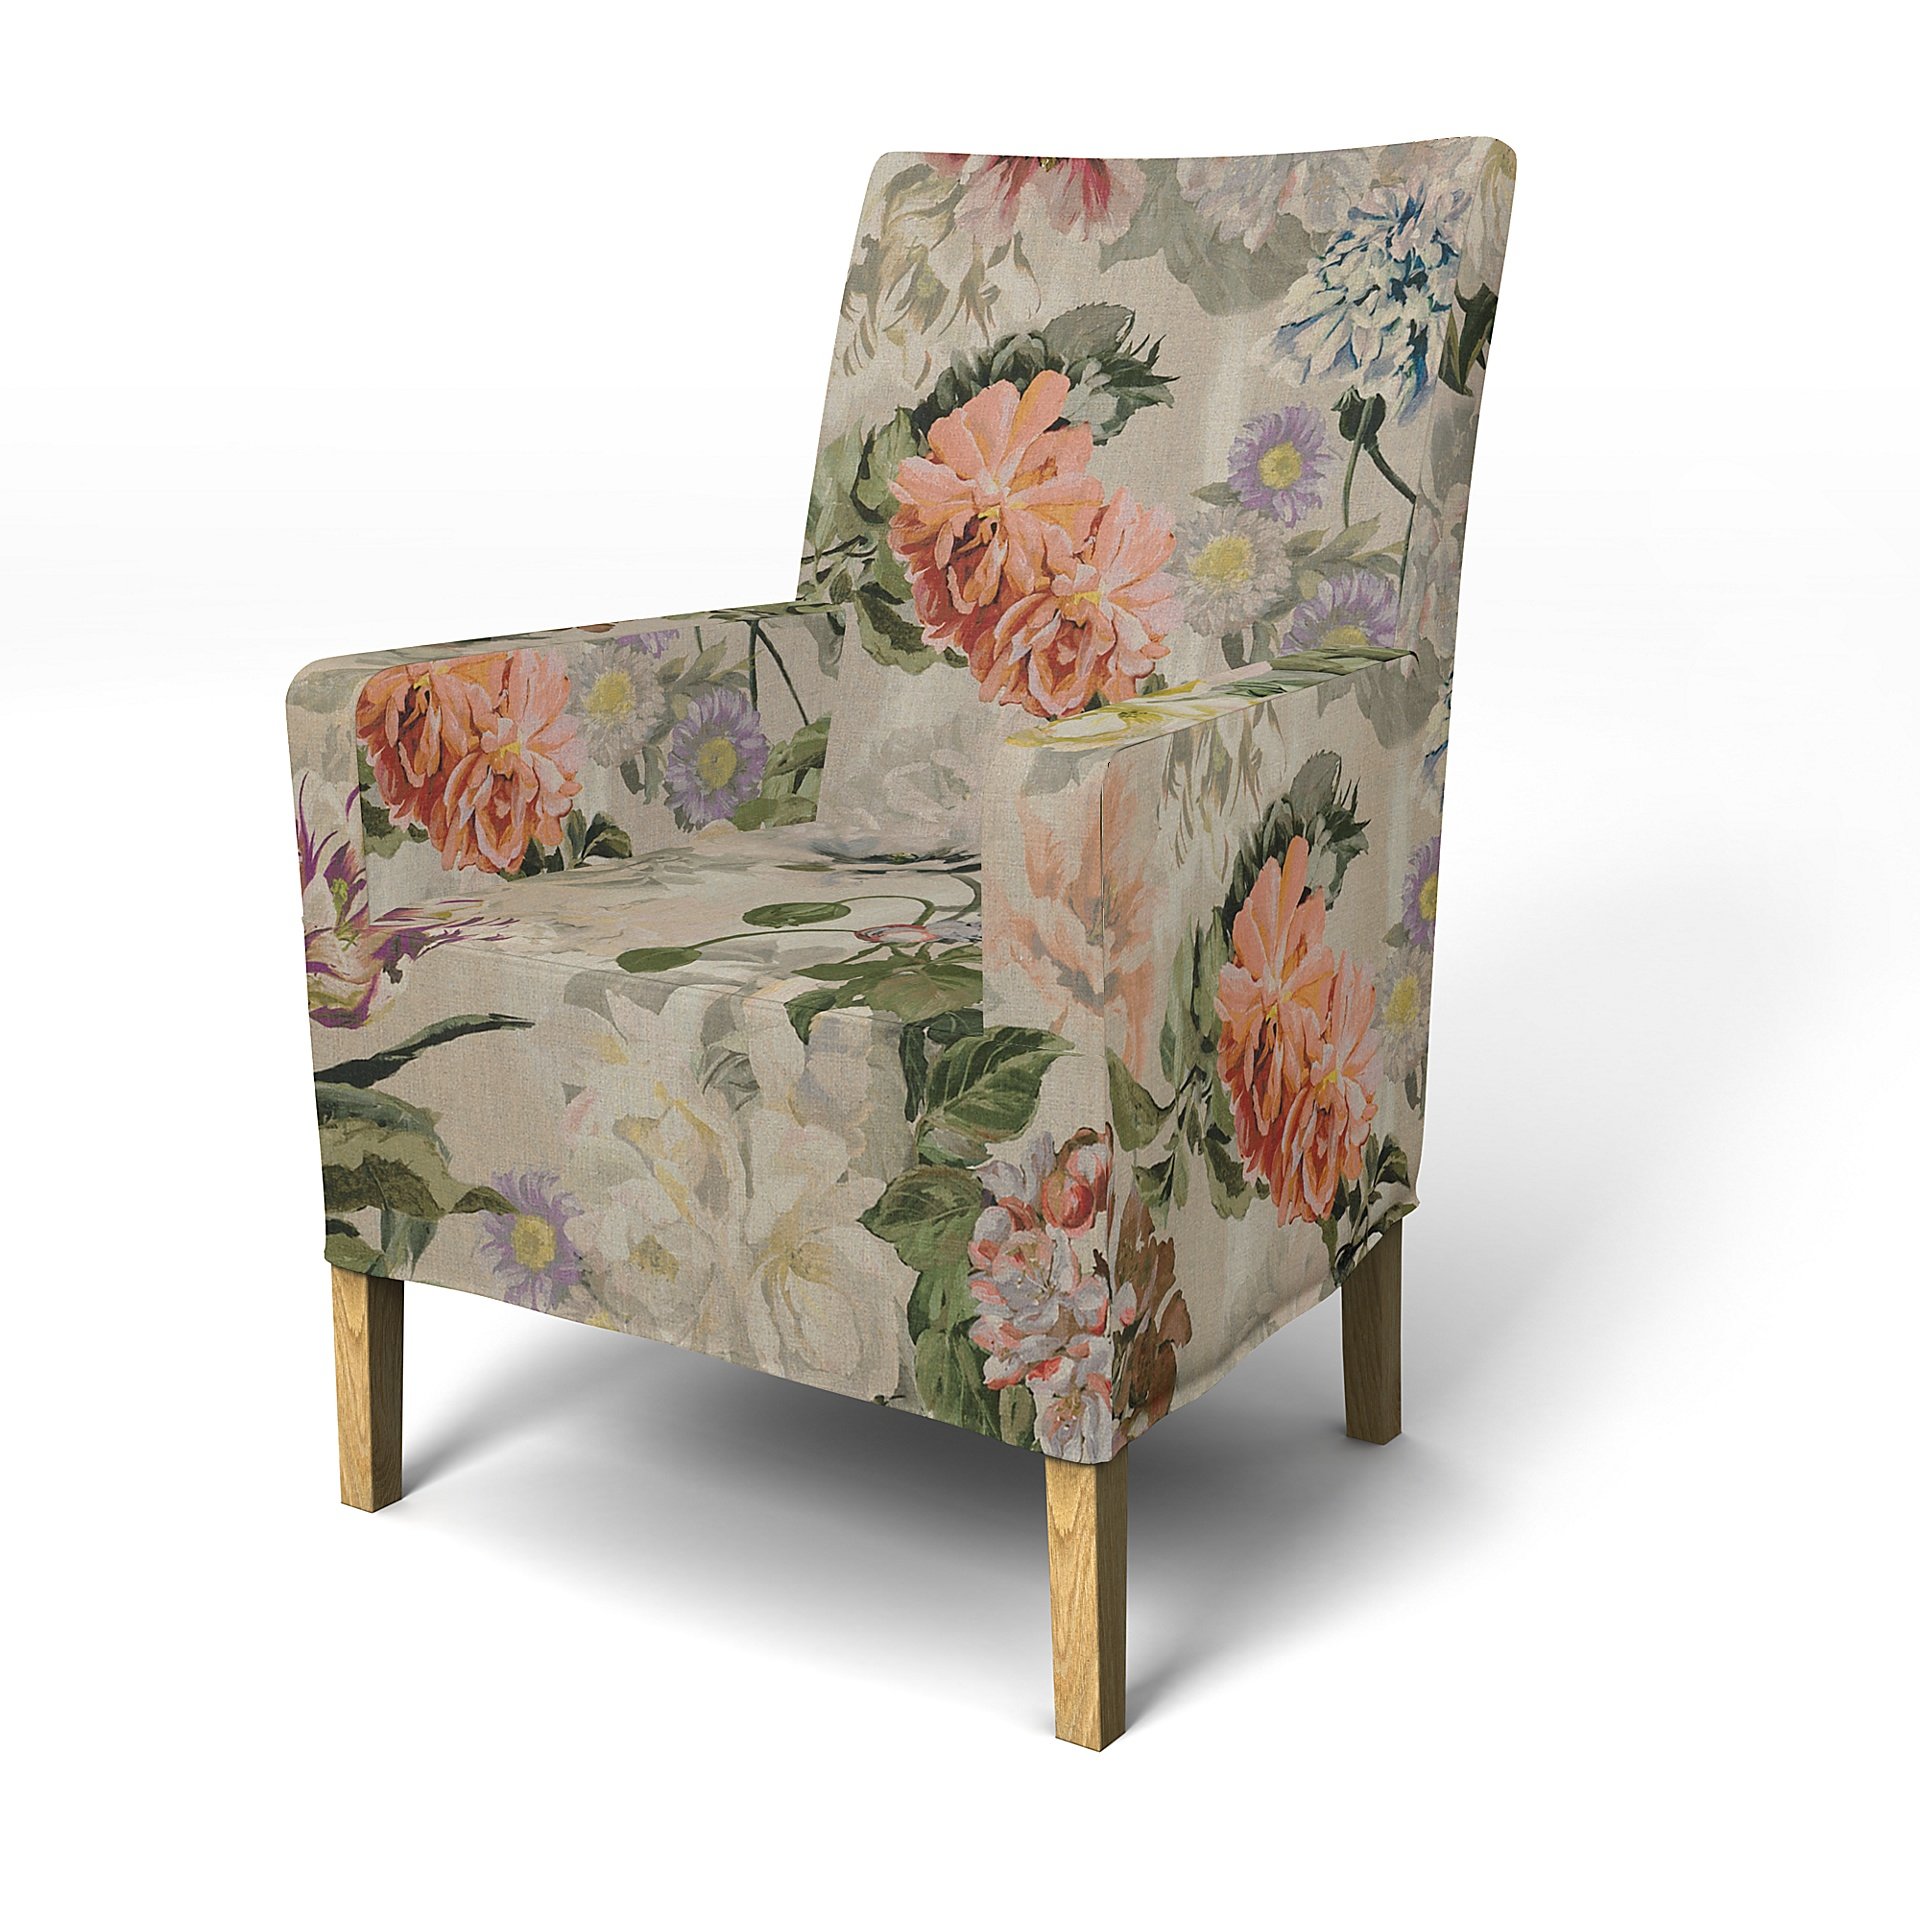 IKEA - Henriksdal, Chair cover w/ armrest, medium length skirt, Delft Flower - Tuberose, Linen - Bem